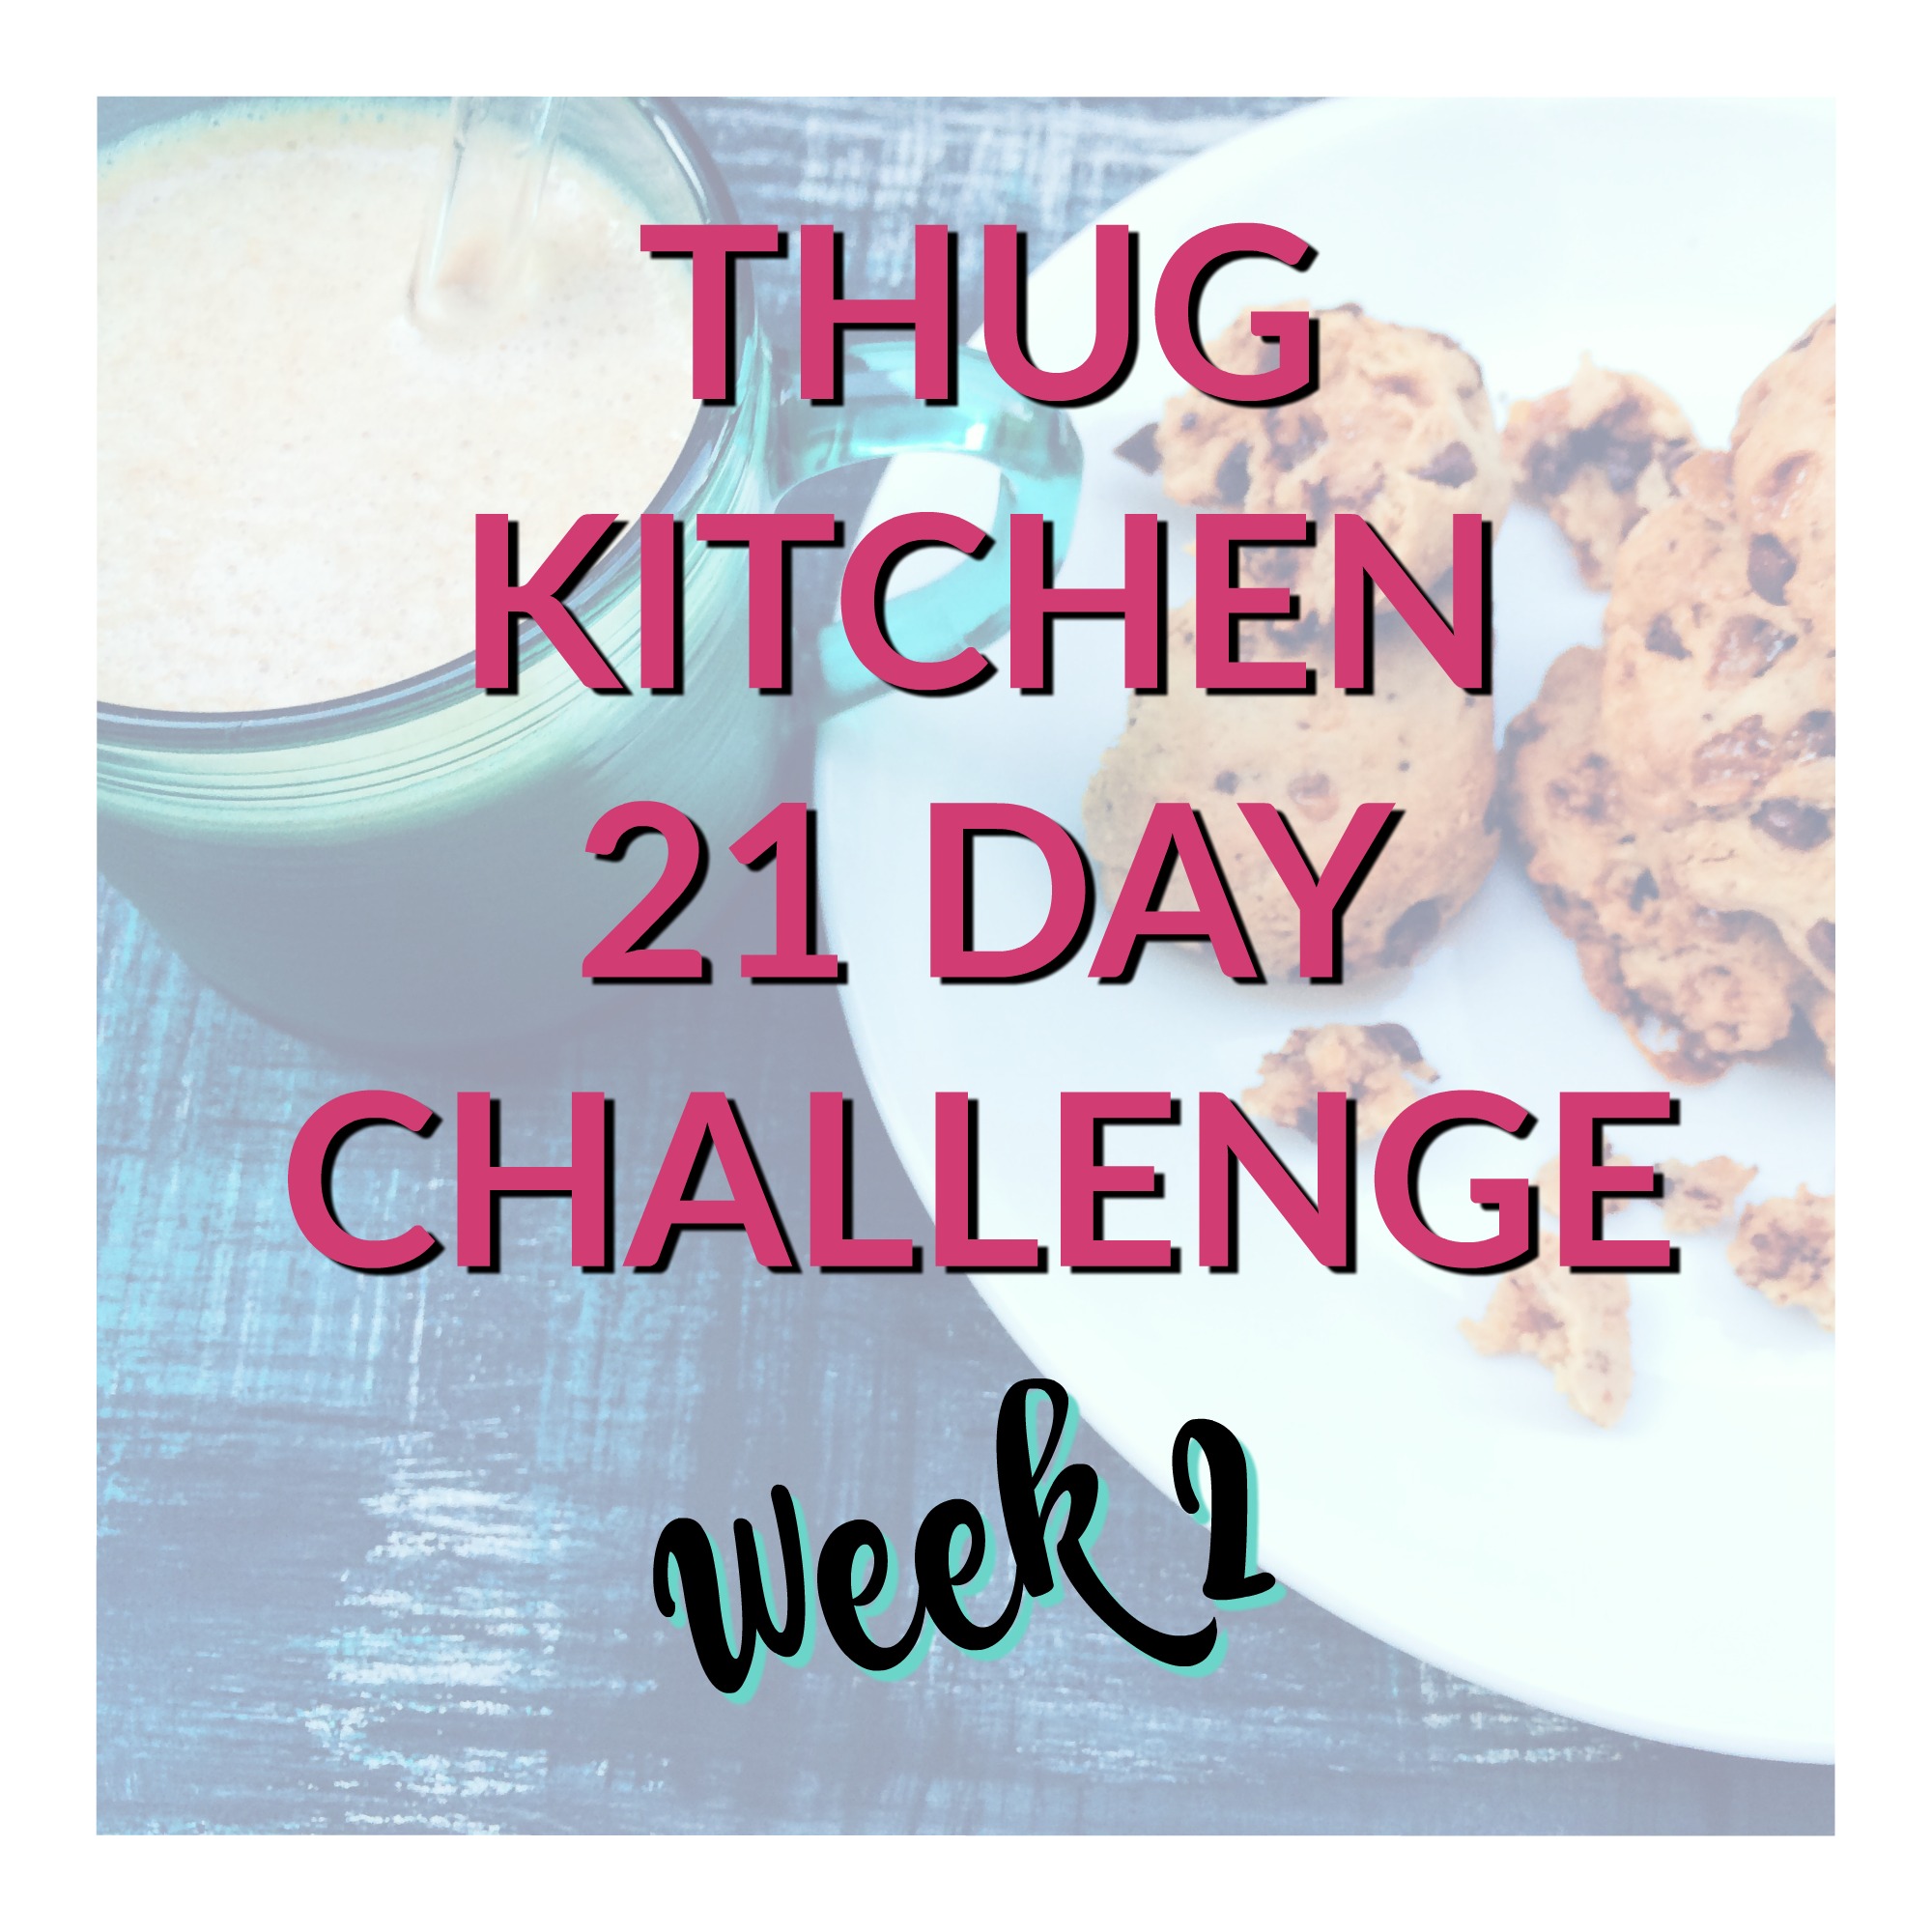 Thug kitchen challenge Week 2